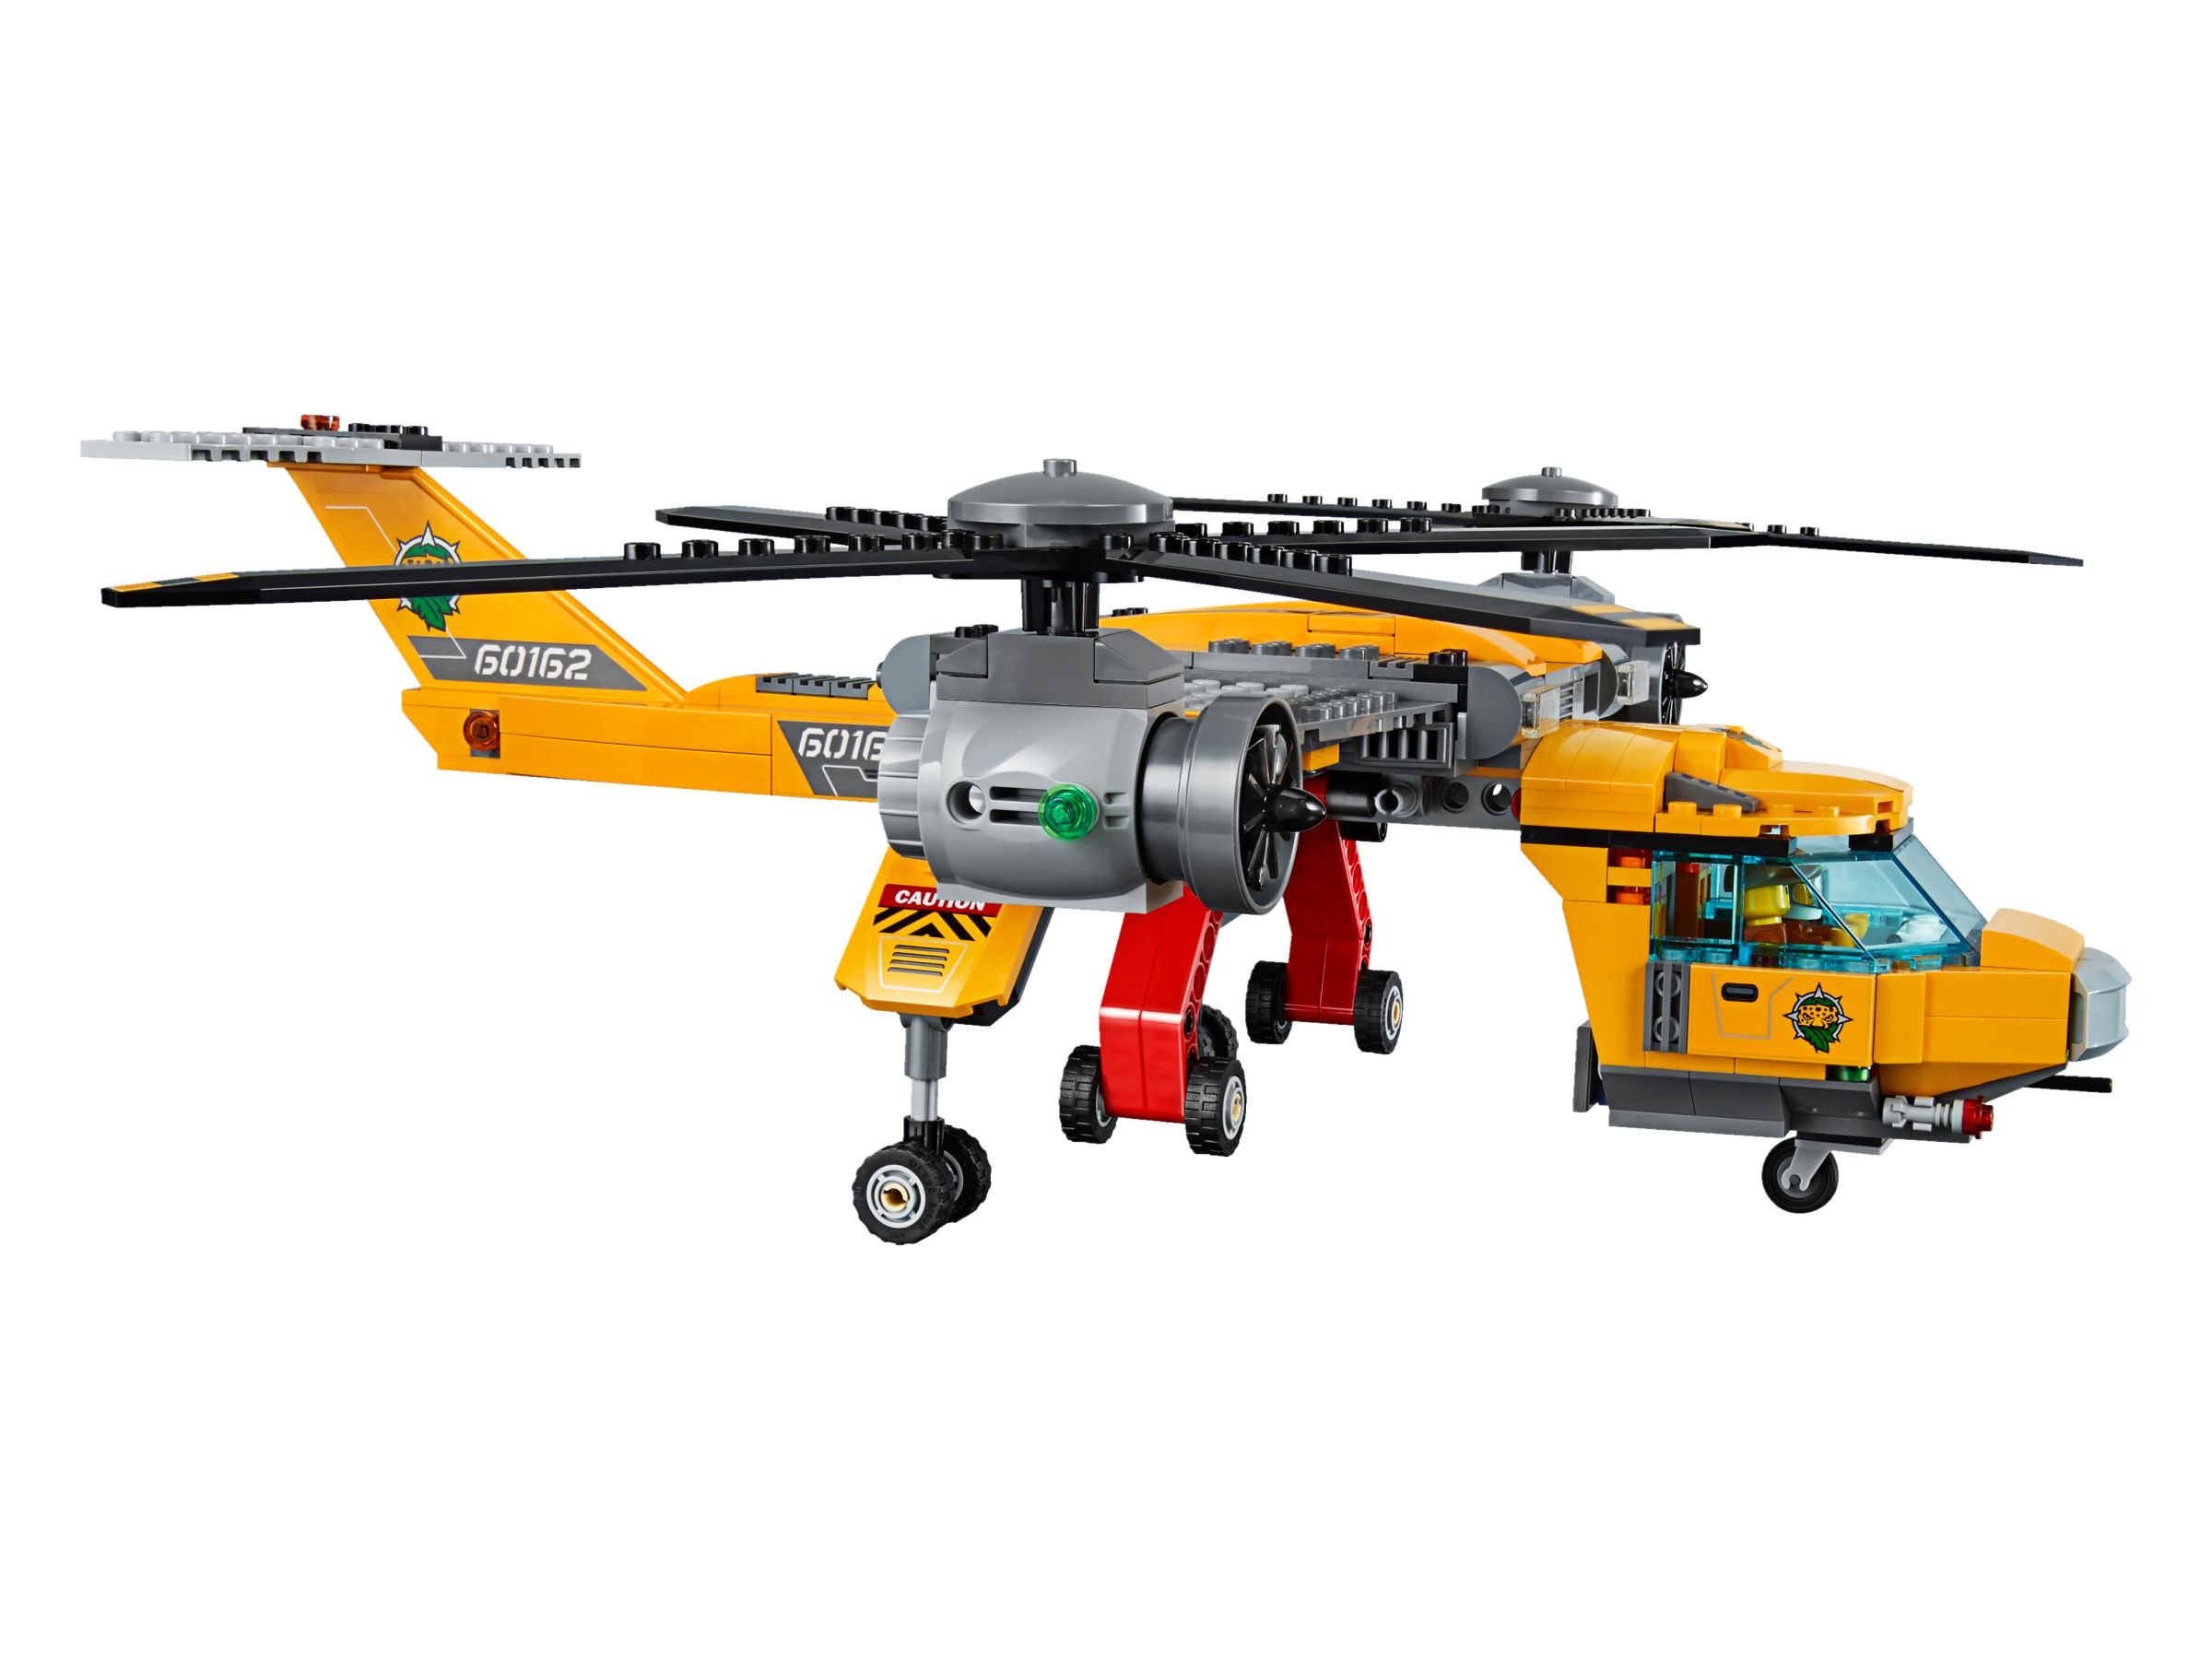 LEGO City 60162 Dschungel-Versorgungshubschrauber LEGO_60162_alt3.jpg